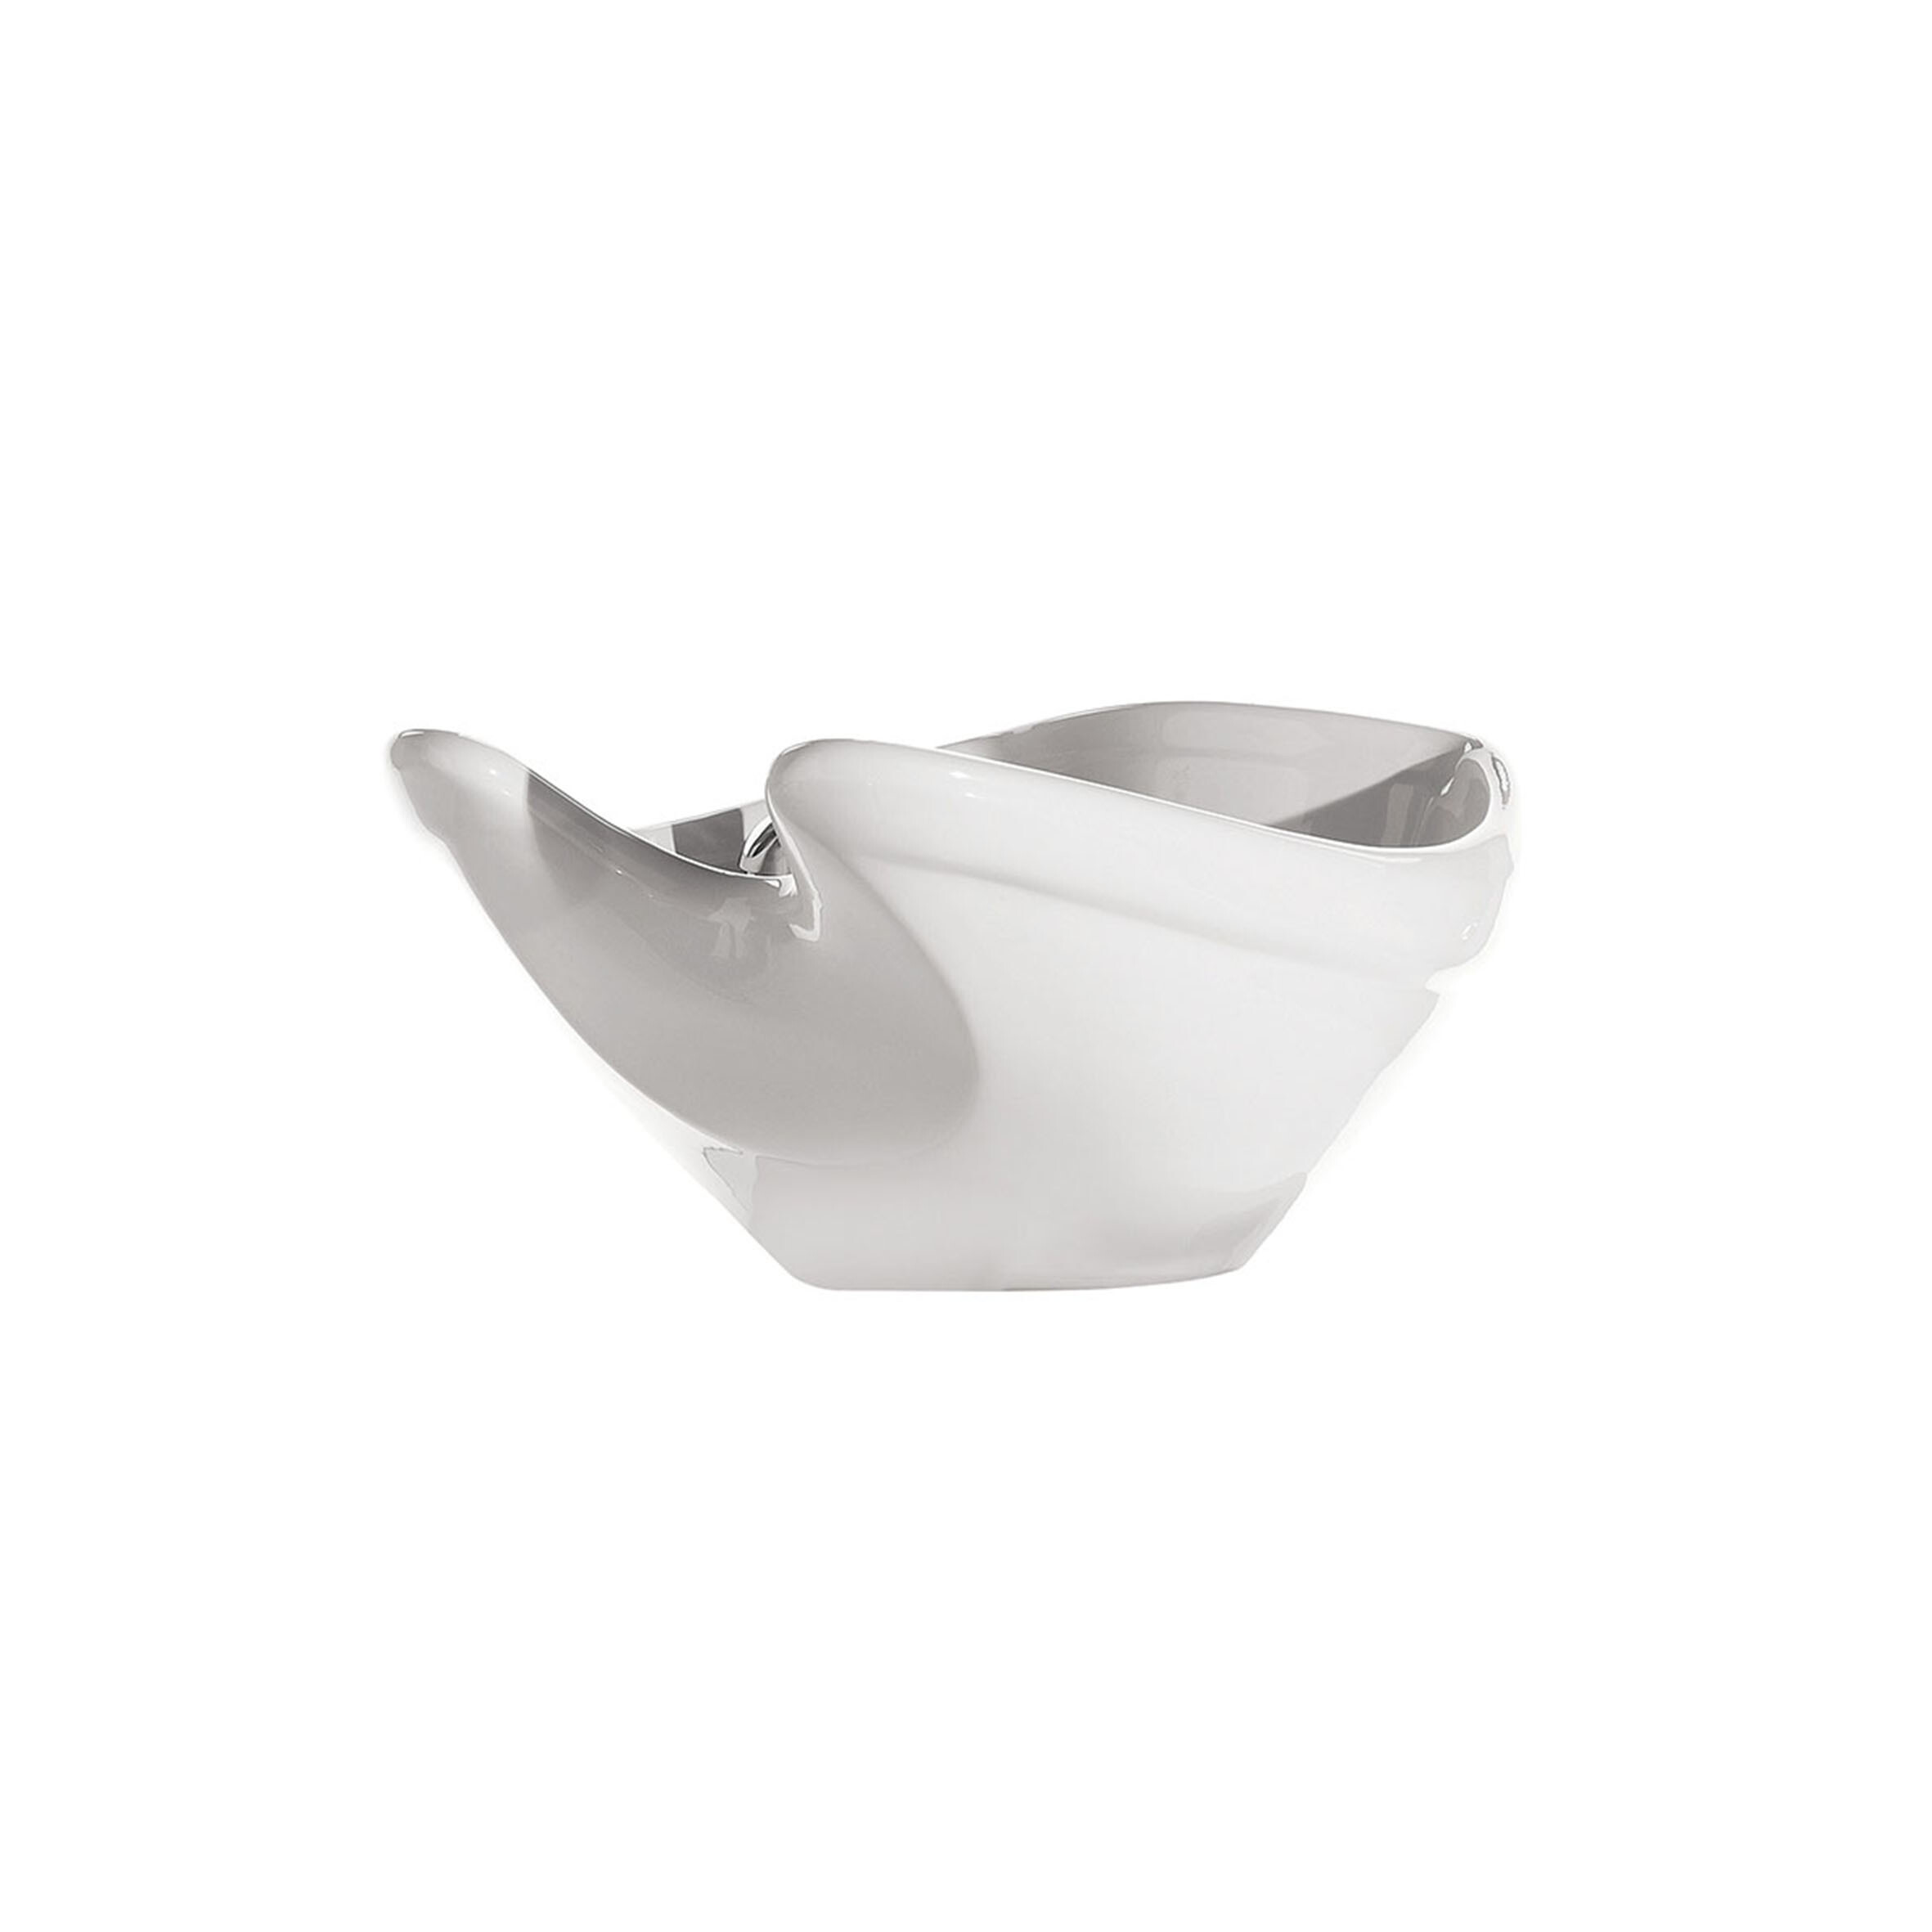 Ceramica bianca per lavaggio per parrucchieri: Ceramica bianca - Luca Rossini